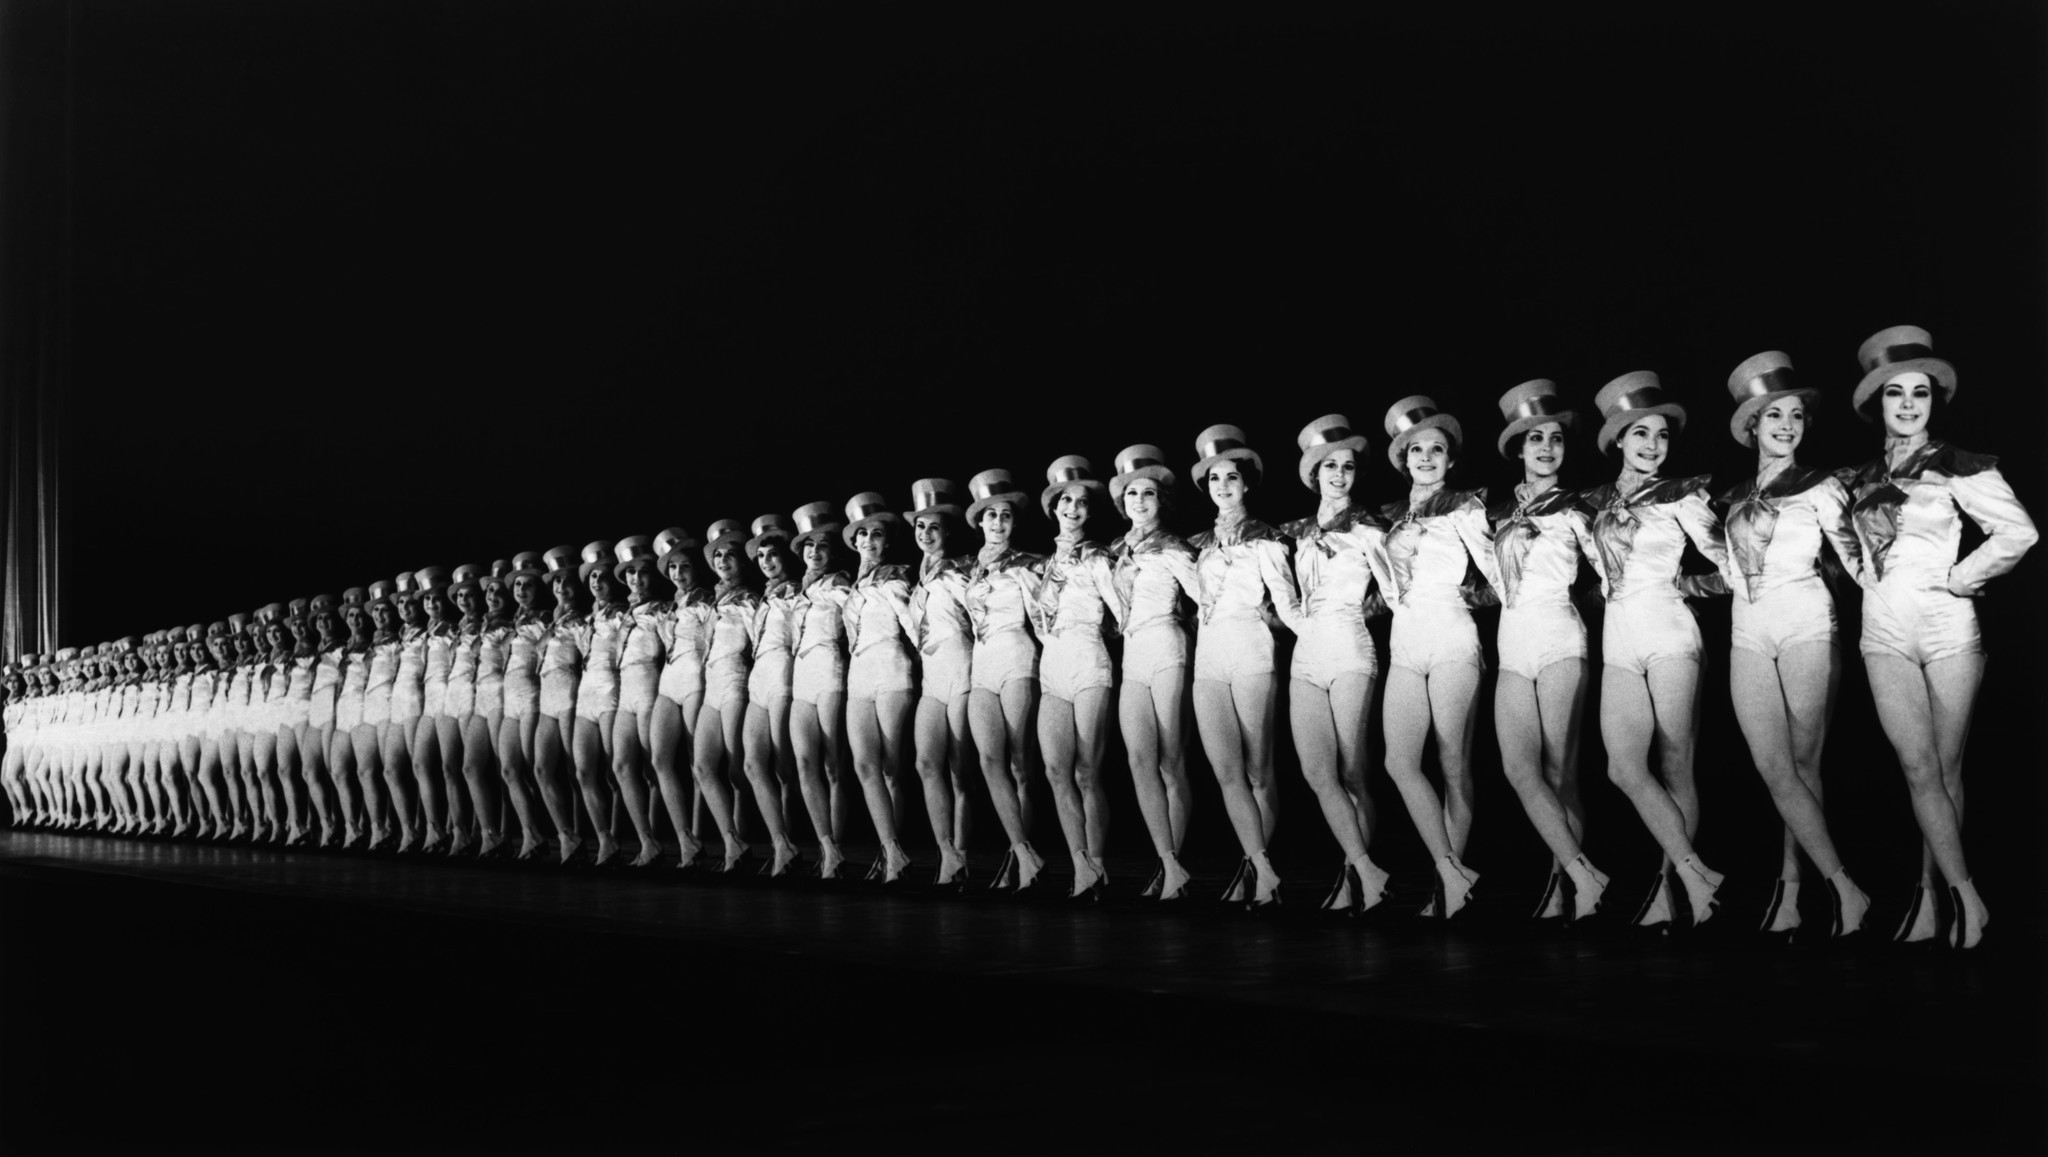 The Rockettes Нью-йоркский женский танцевальный коллектив